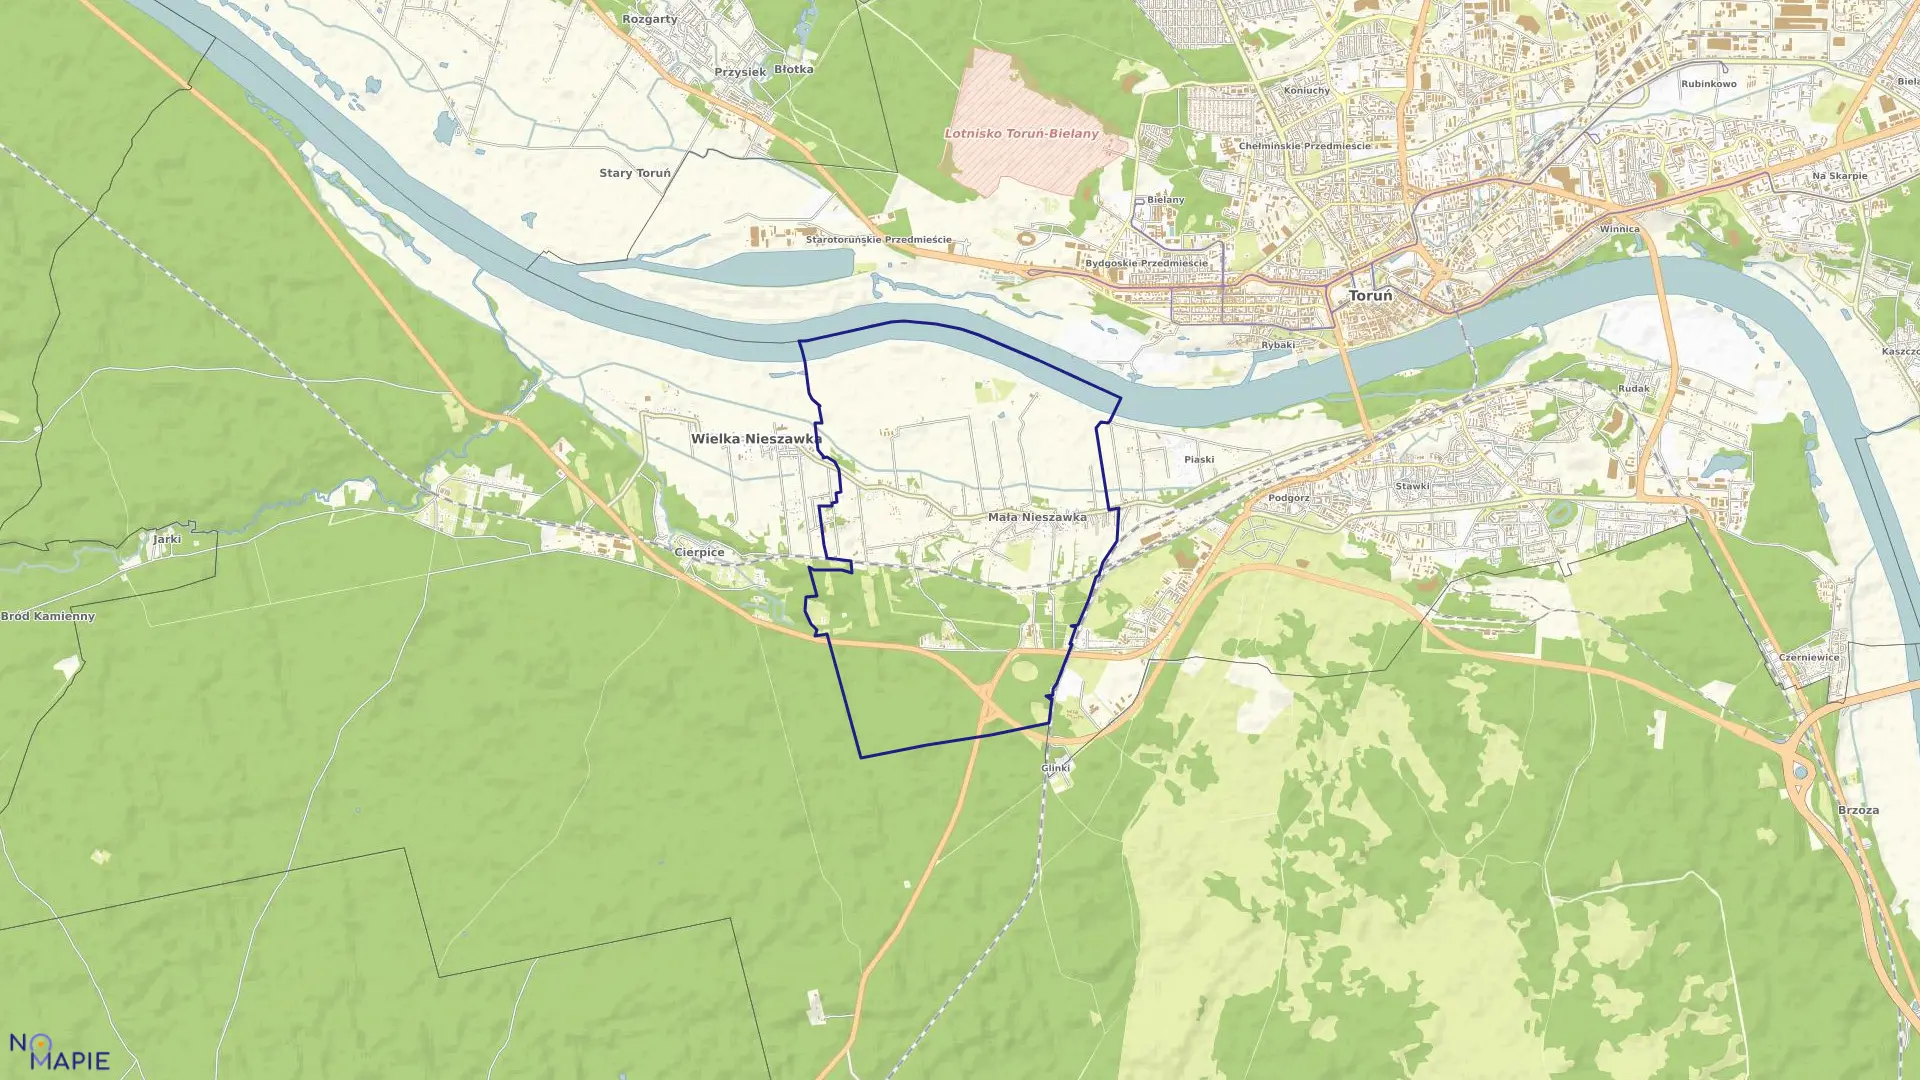 Mapa obrębu Mała Nieszawka w gminie Wielka Nieszawka